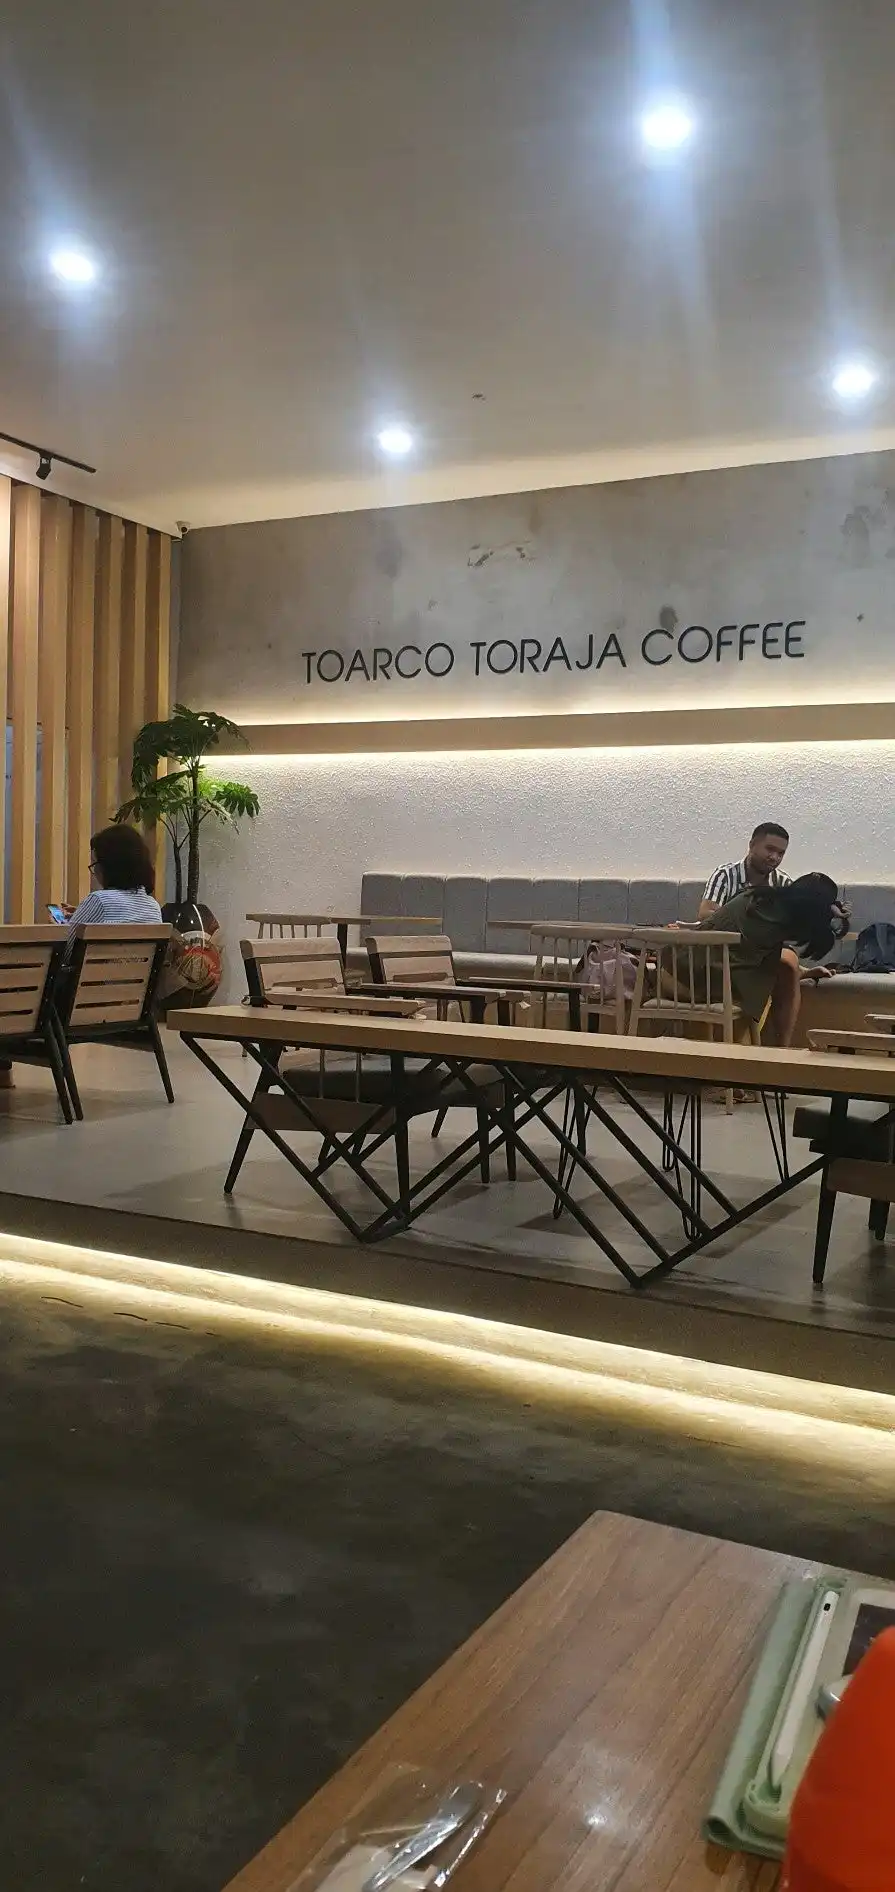 Toarco Toraja Coffee